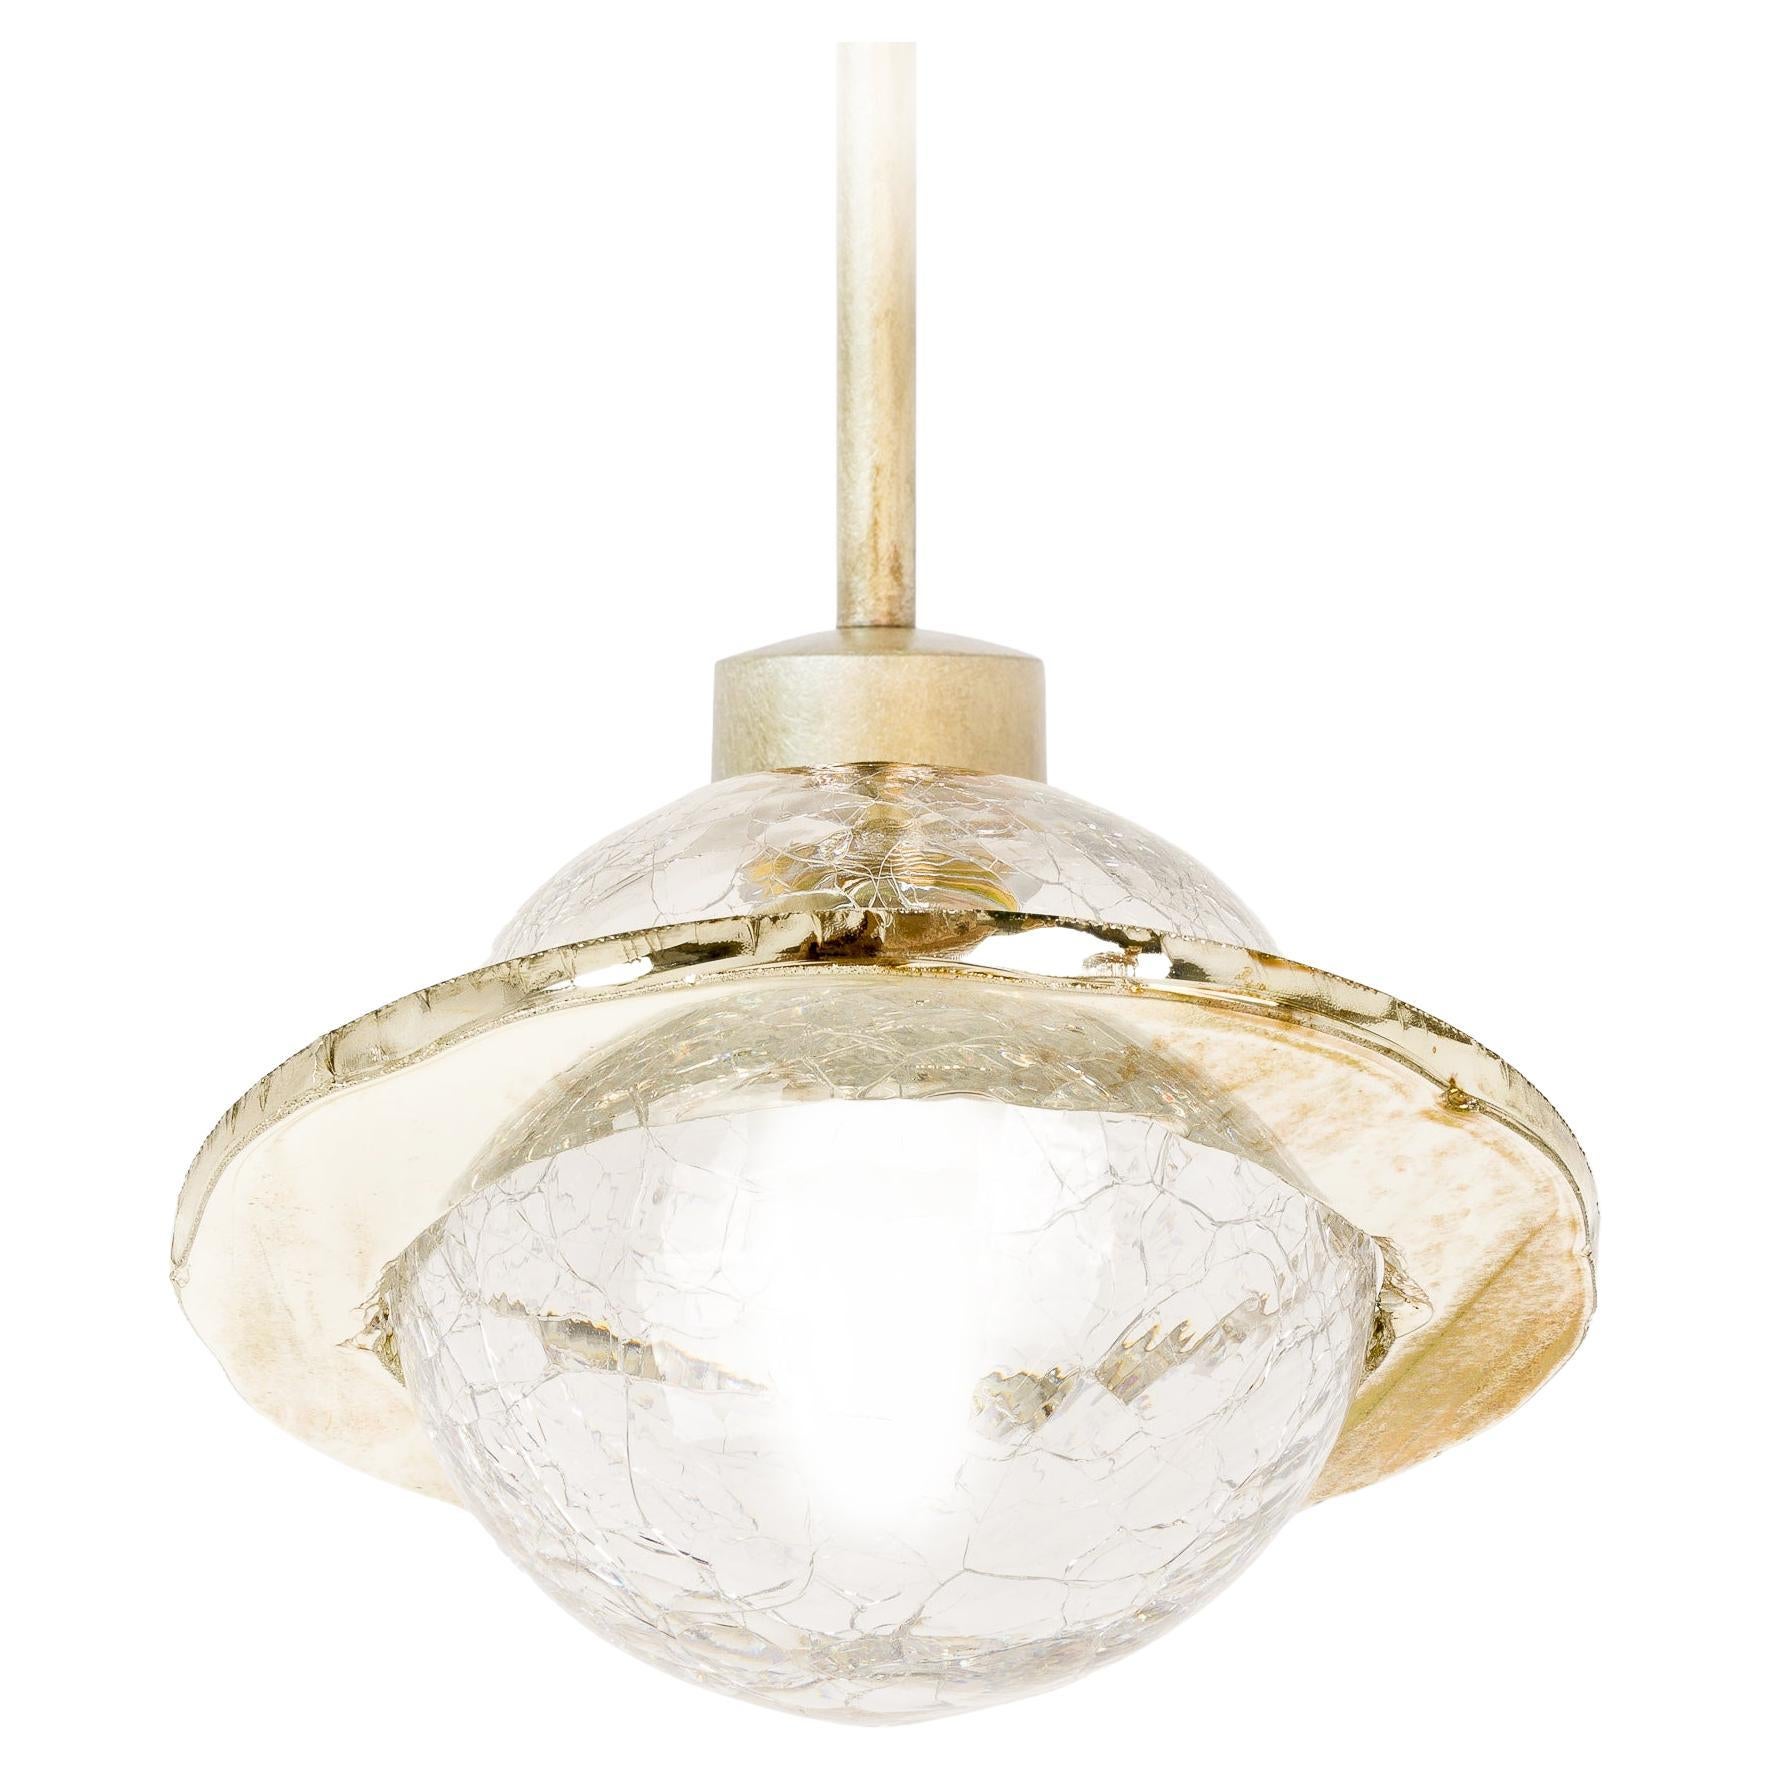 Ange 14 Lampe contemporaine Bol de cristal Craquele, anneau de verre argenté coloré